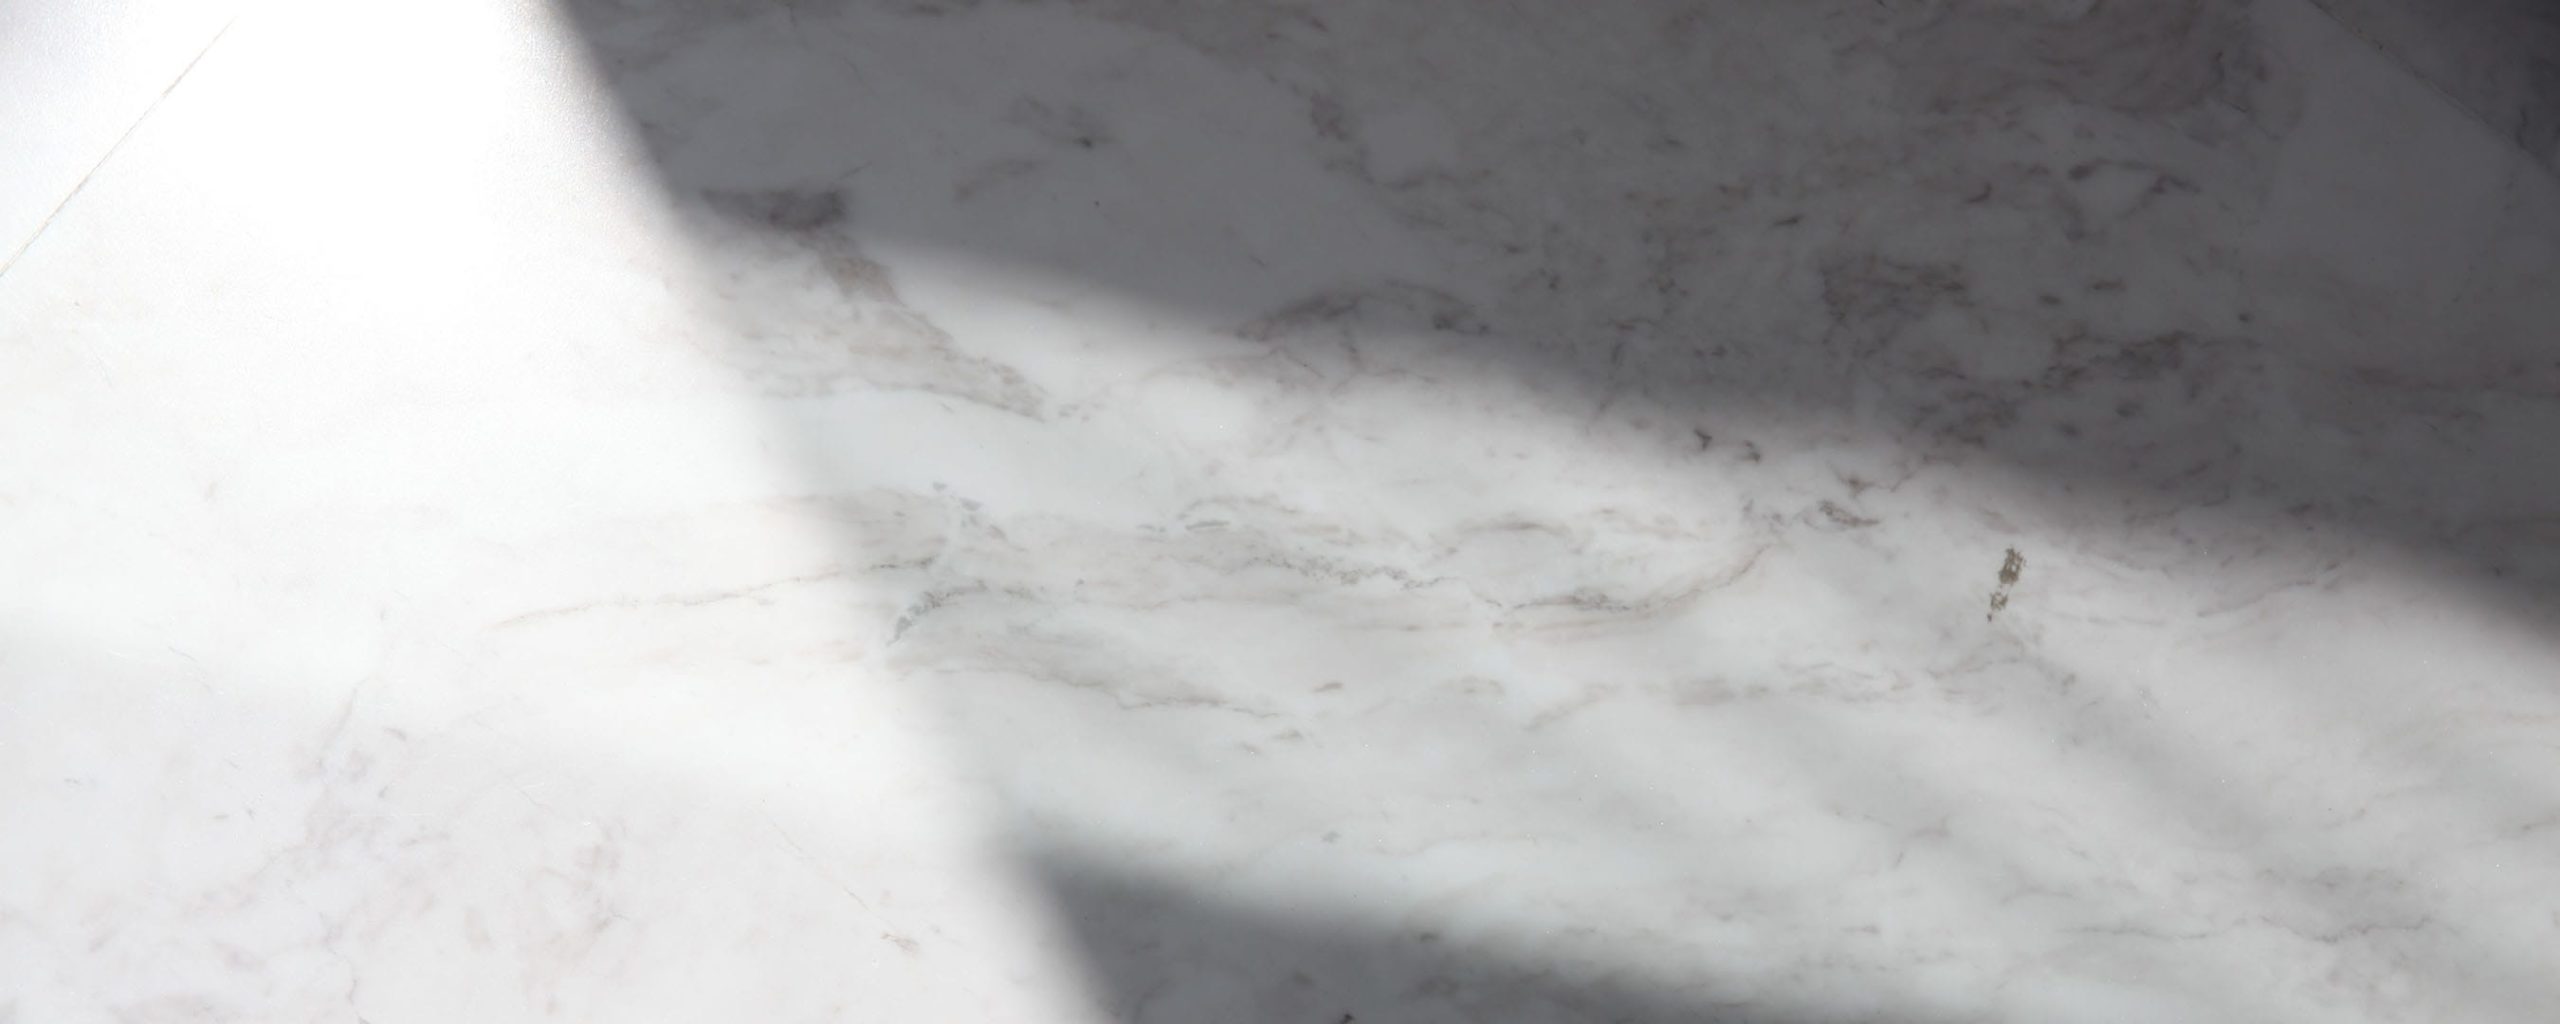 Cristallizzazione del marmo: i tuoi pavimenti sono adatti? | SAGEM Pulizie Milano